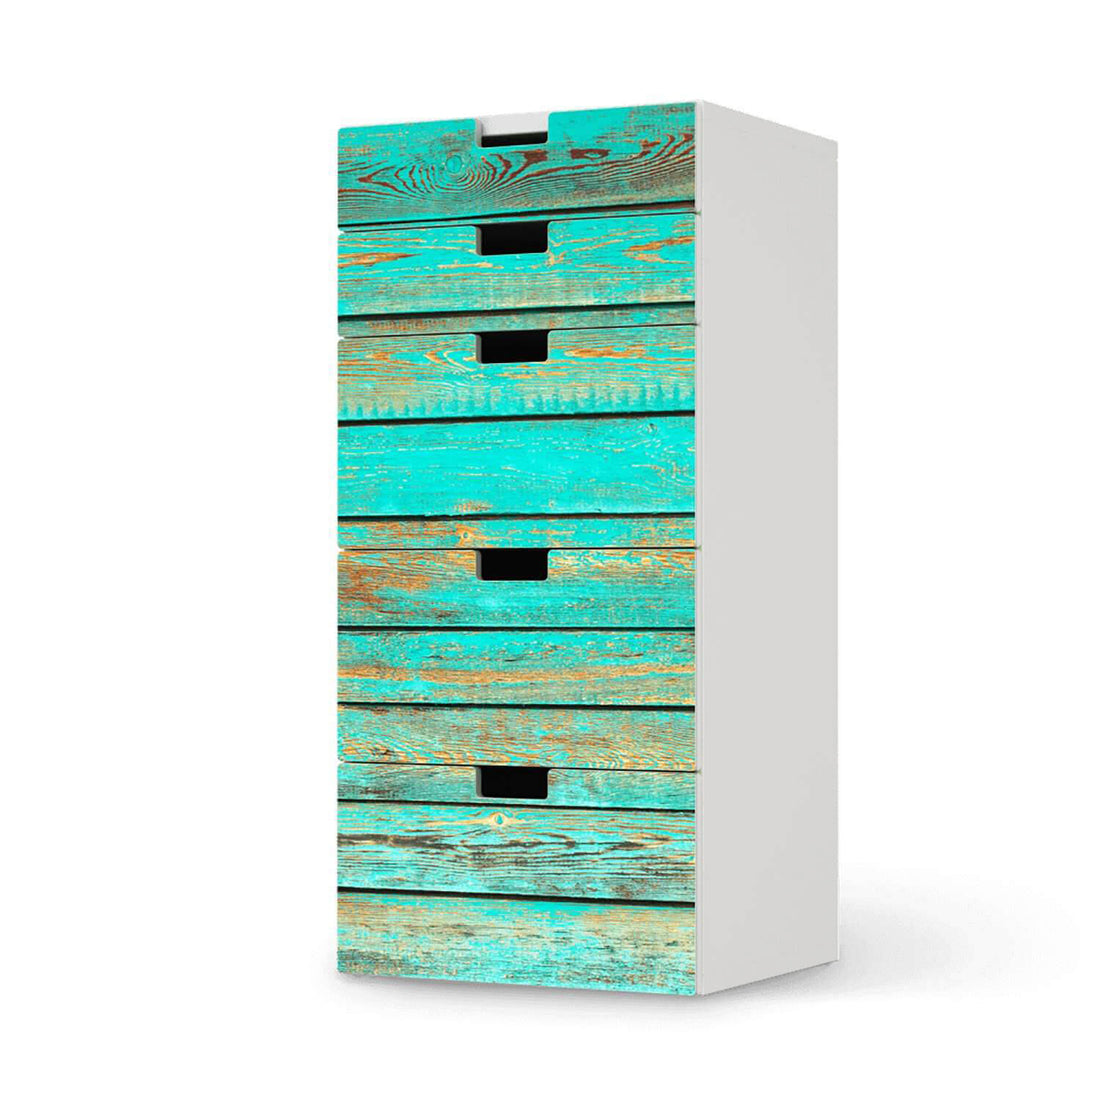 Möbel Klebefolie Wooden Aqua - IKEA Stuva Kommode - 5 Schubladen  - weiss